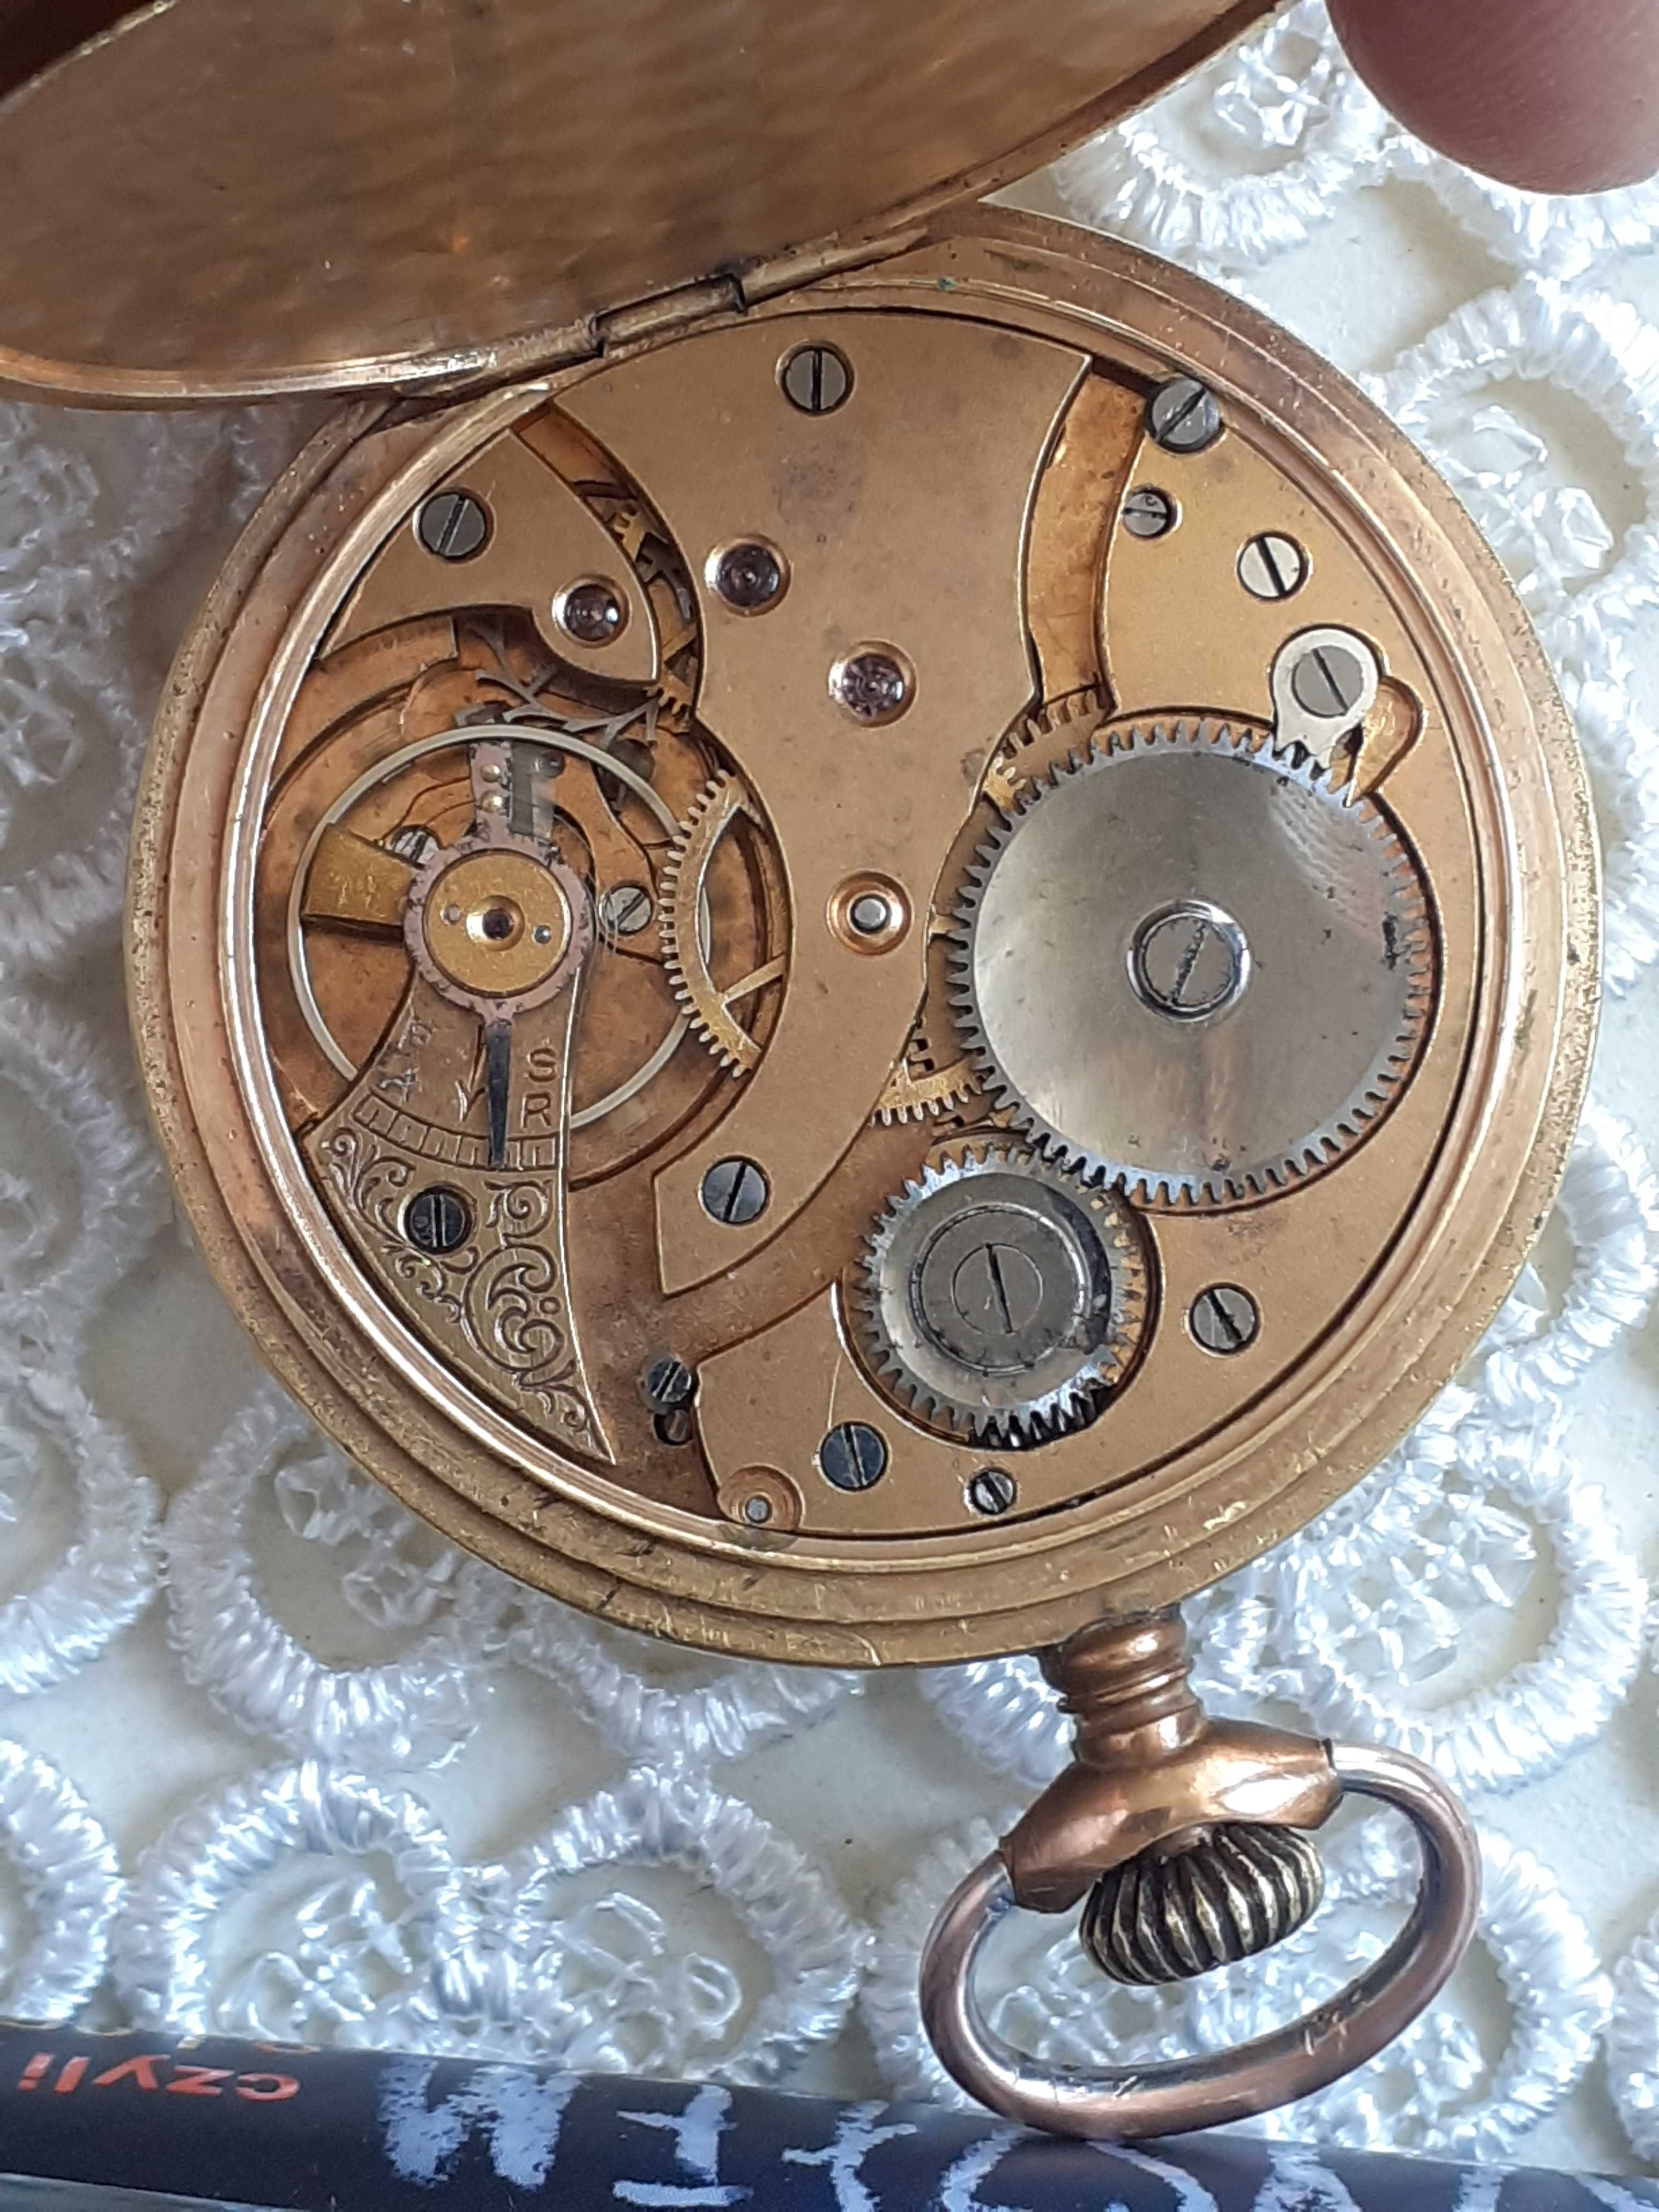 Staccato-kieszonkowy zegarek prod. szwajcarskiej z lat 30 tych